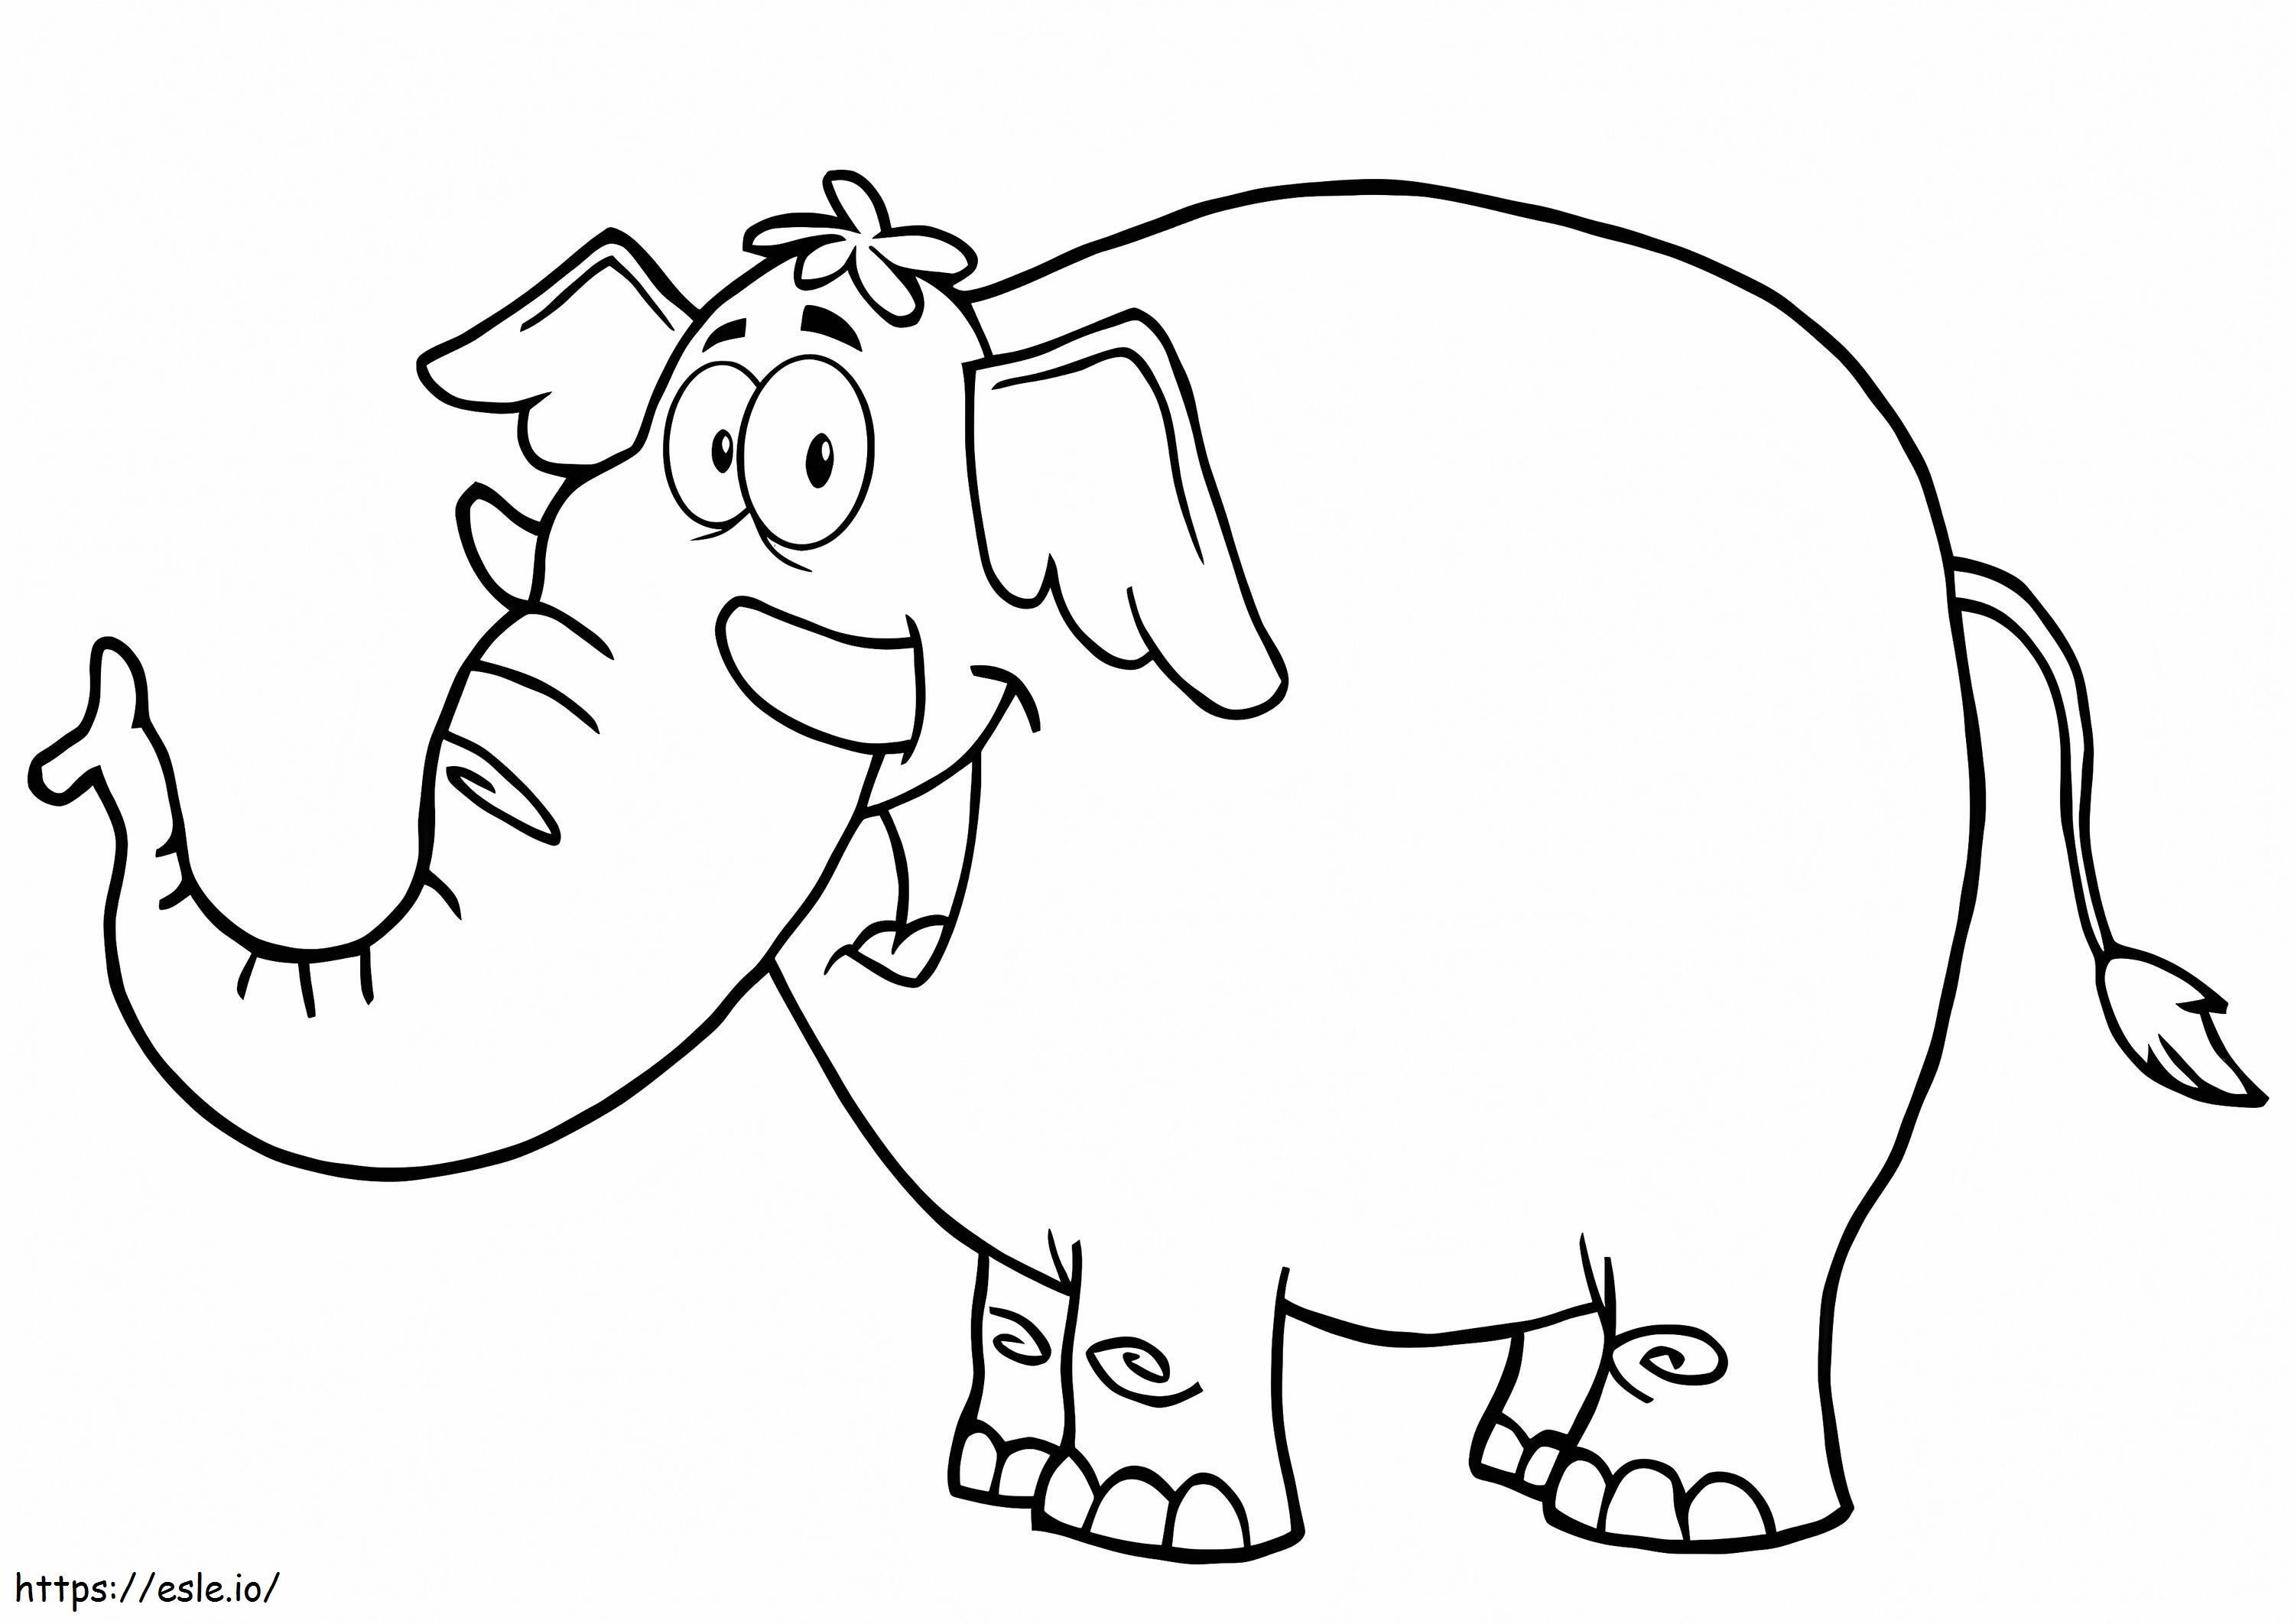 Elefante de dibujos animados sonriendo para colorear